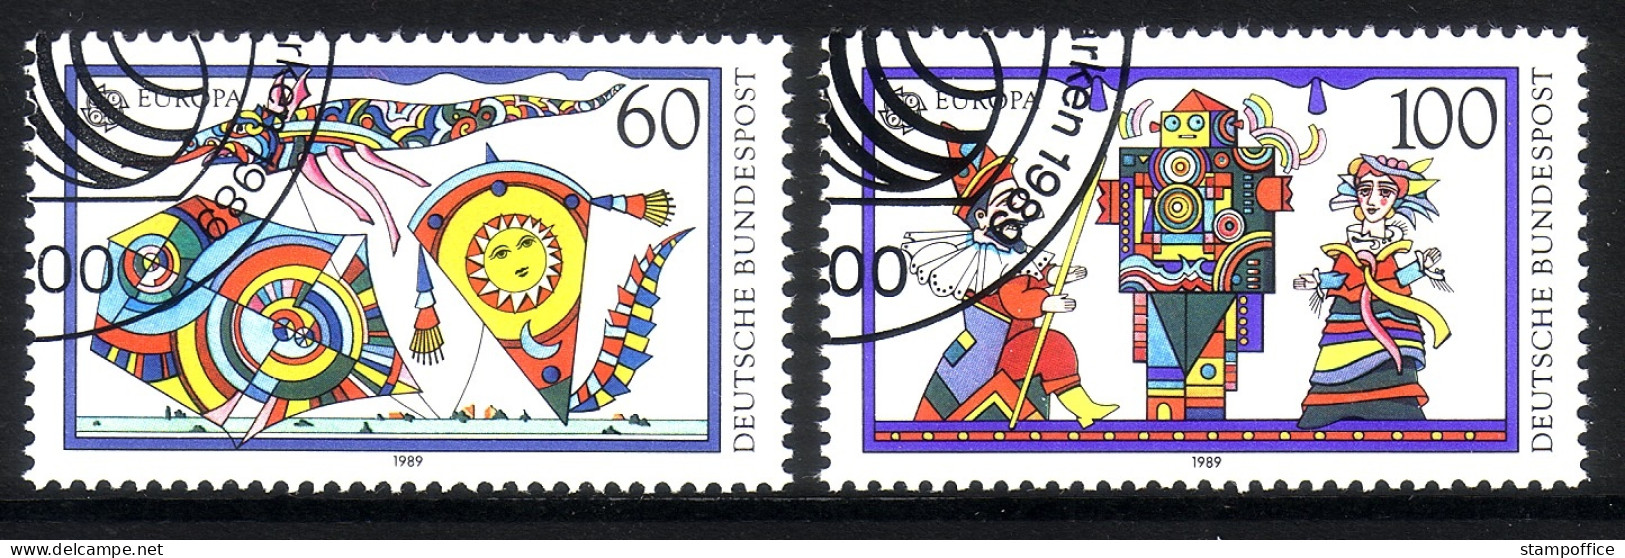 DEUTSCHLAND MI-NR. 1417-1418 GESTEMPELT(USED) EUROPA 1989 KINDERSPIELE PUPPENTHEATER - 1989